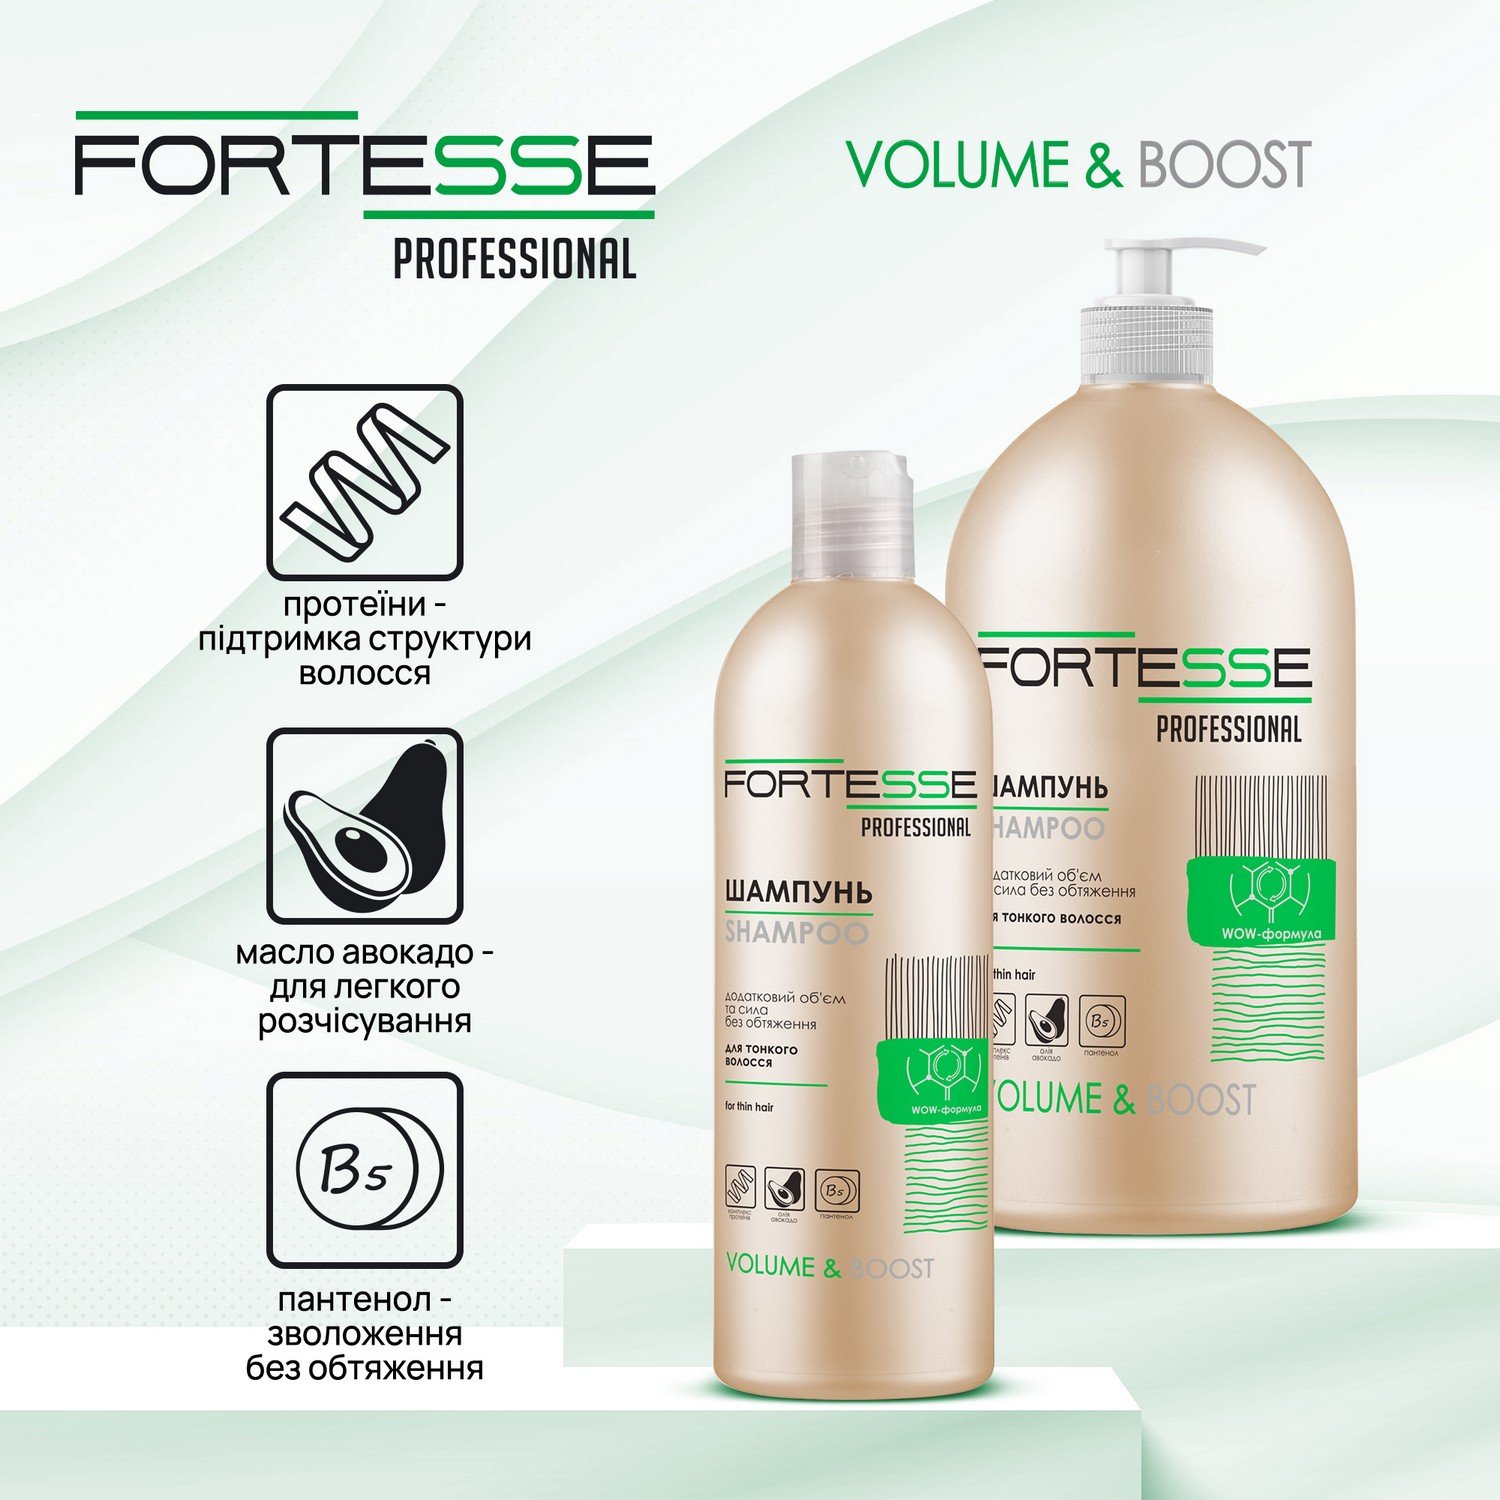 Шампунь Fortesse Professional Volume & Boost Объем, для тонких волос, с дозатором, 1000 мл - фото 3